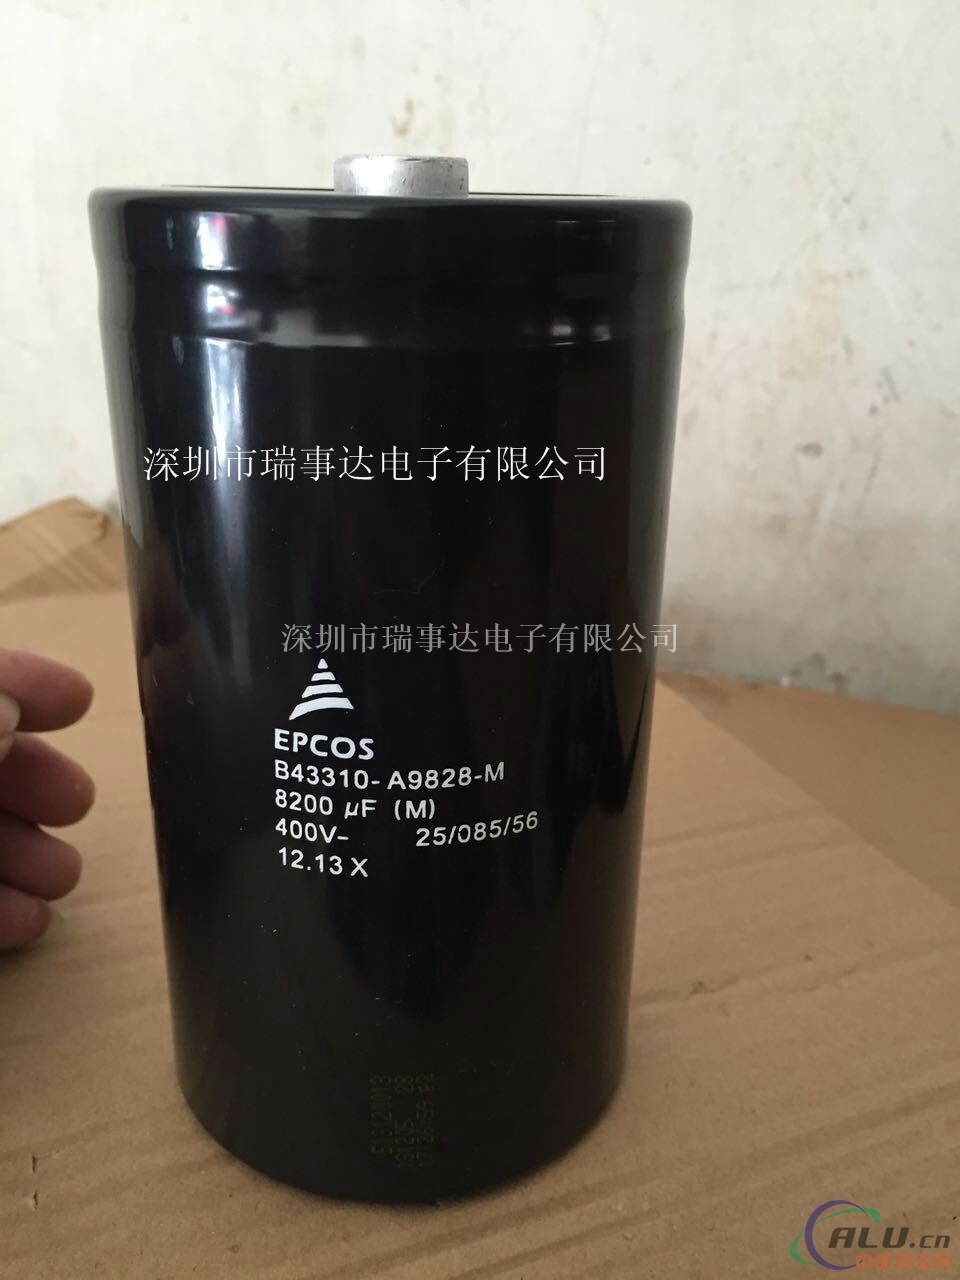 EPCOS B43310-A5828-M铝电容器8200uF450V